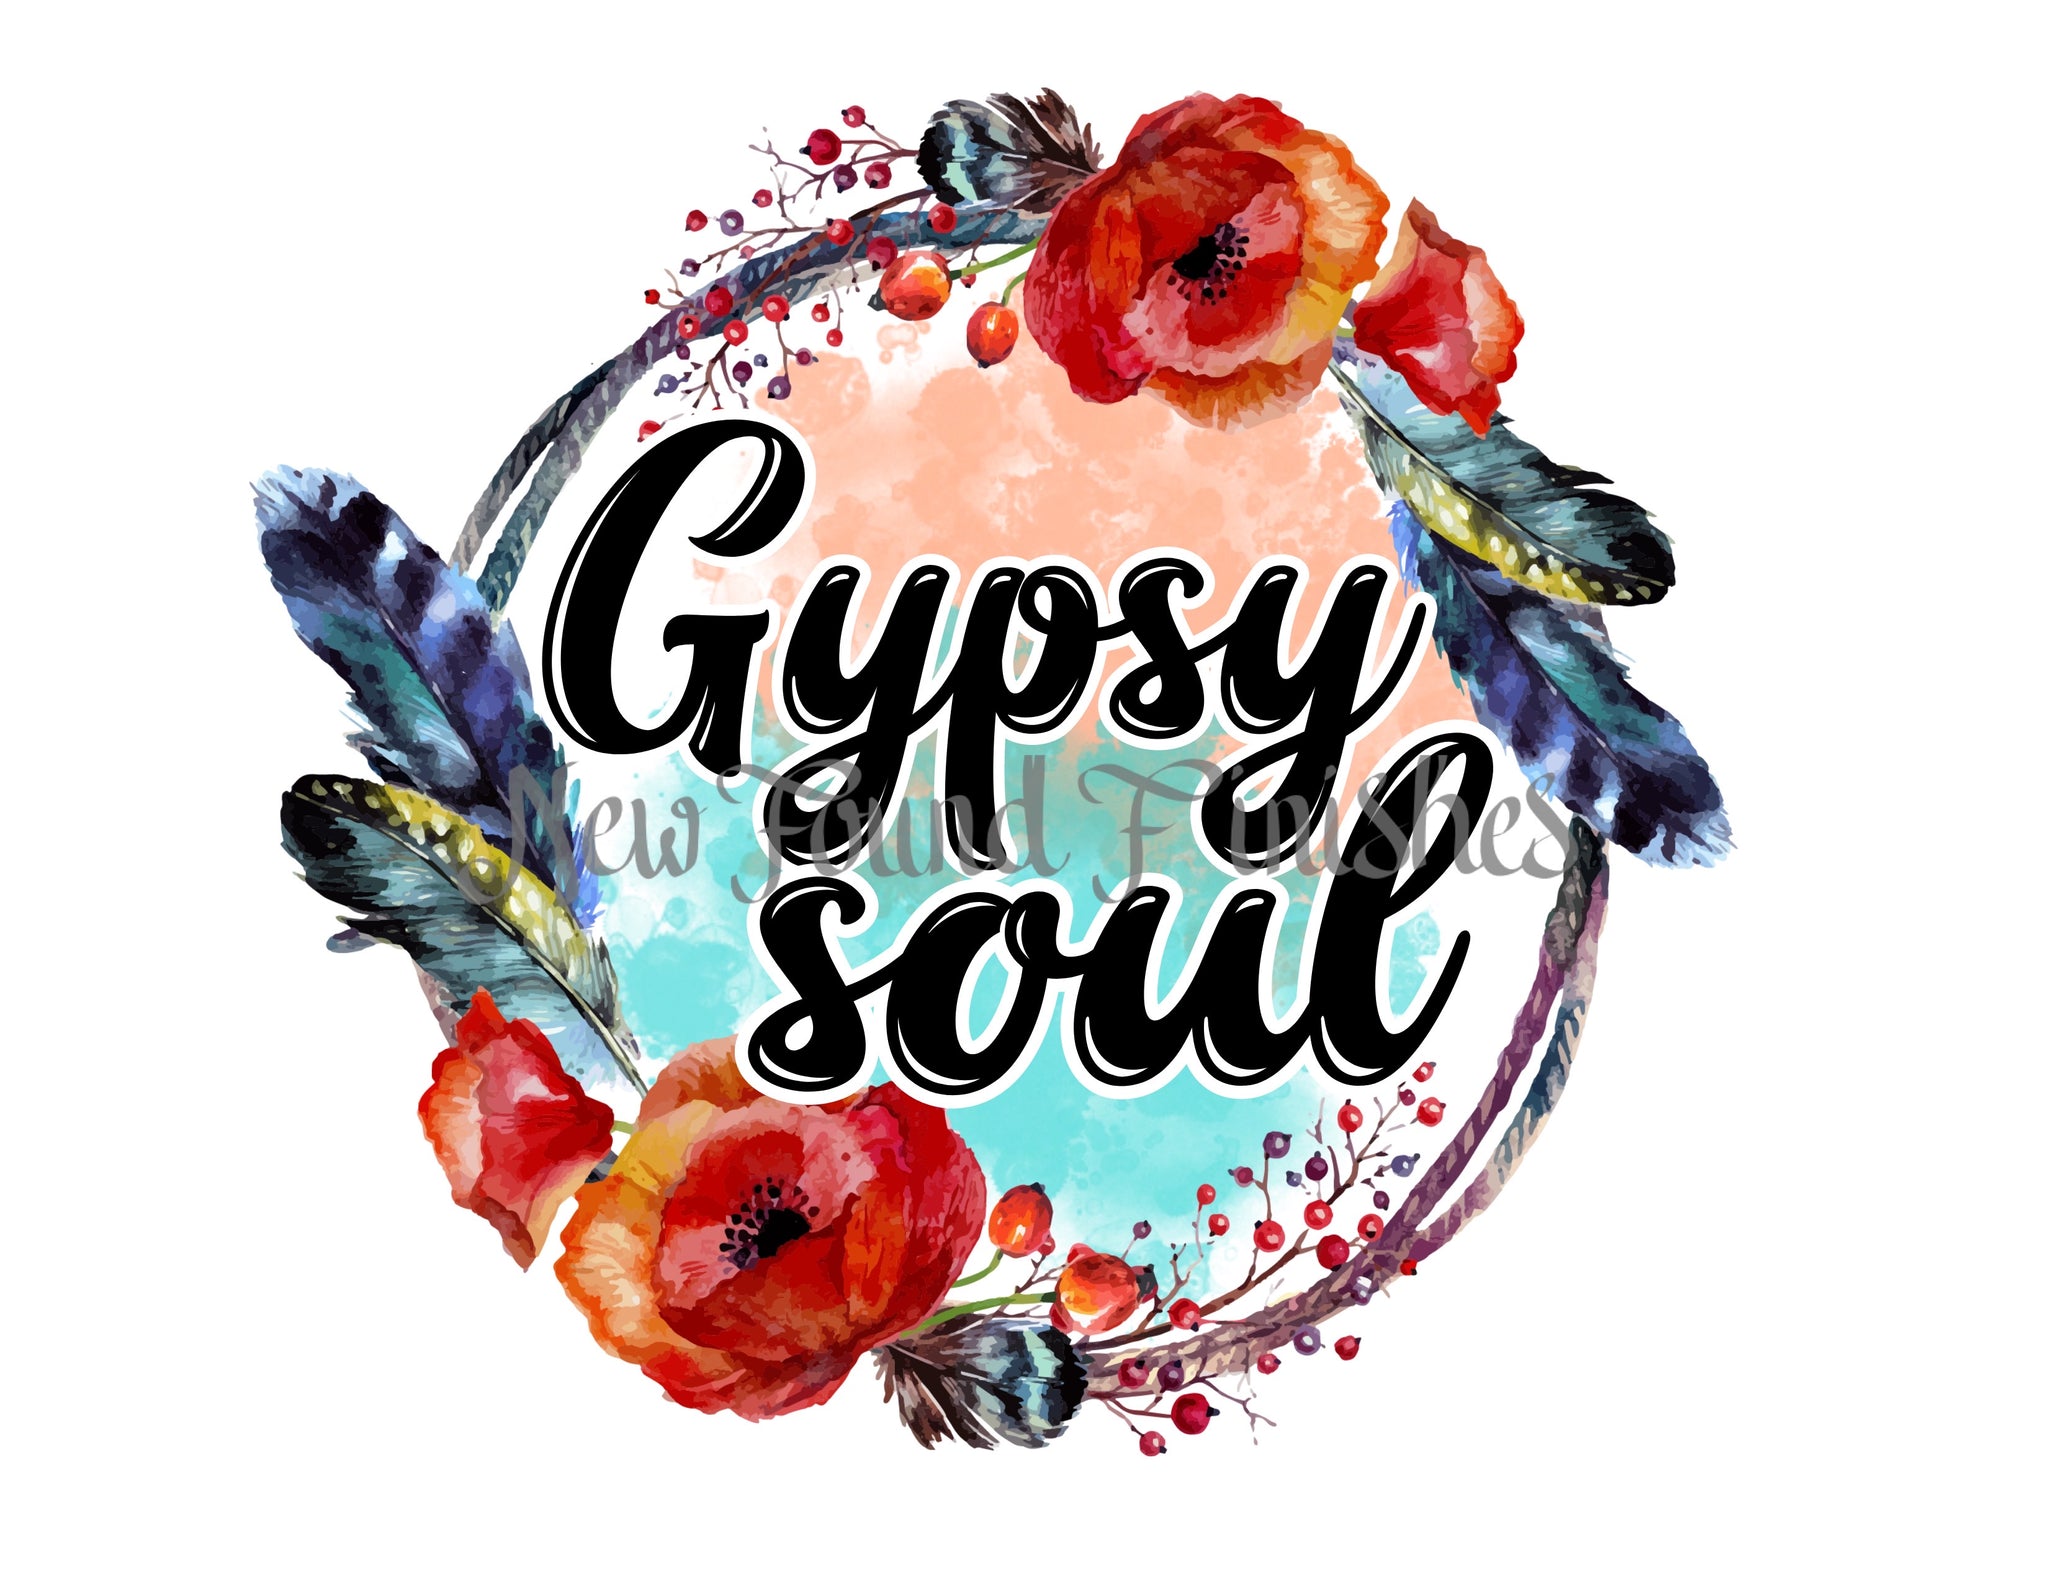 Gypsy soul 2